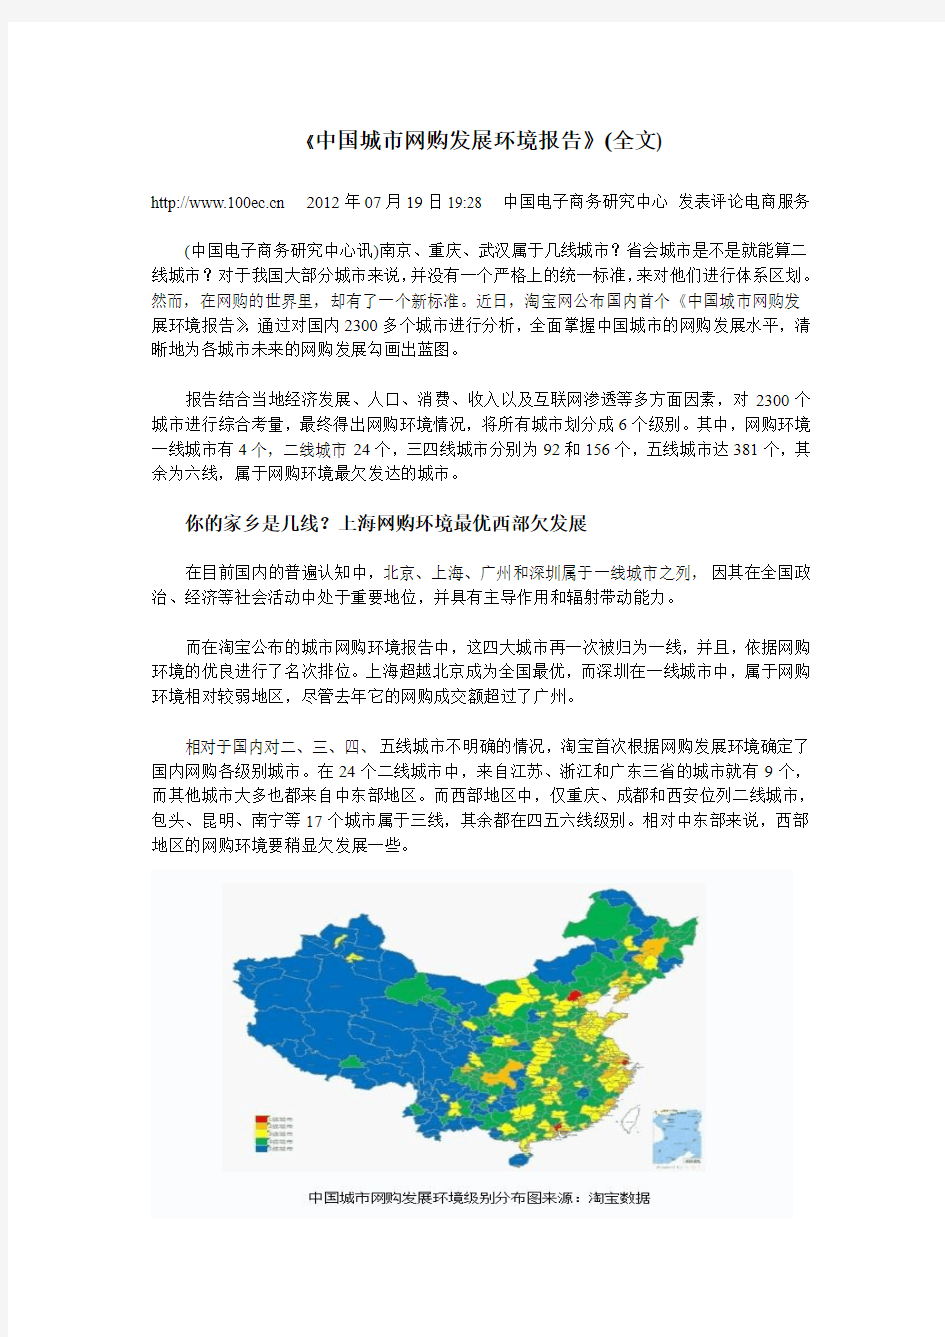 《中国城市网购发展环境报告》(全文)